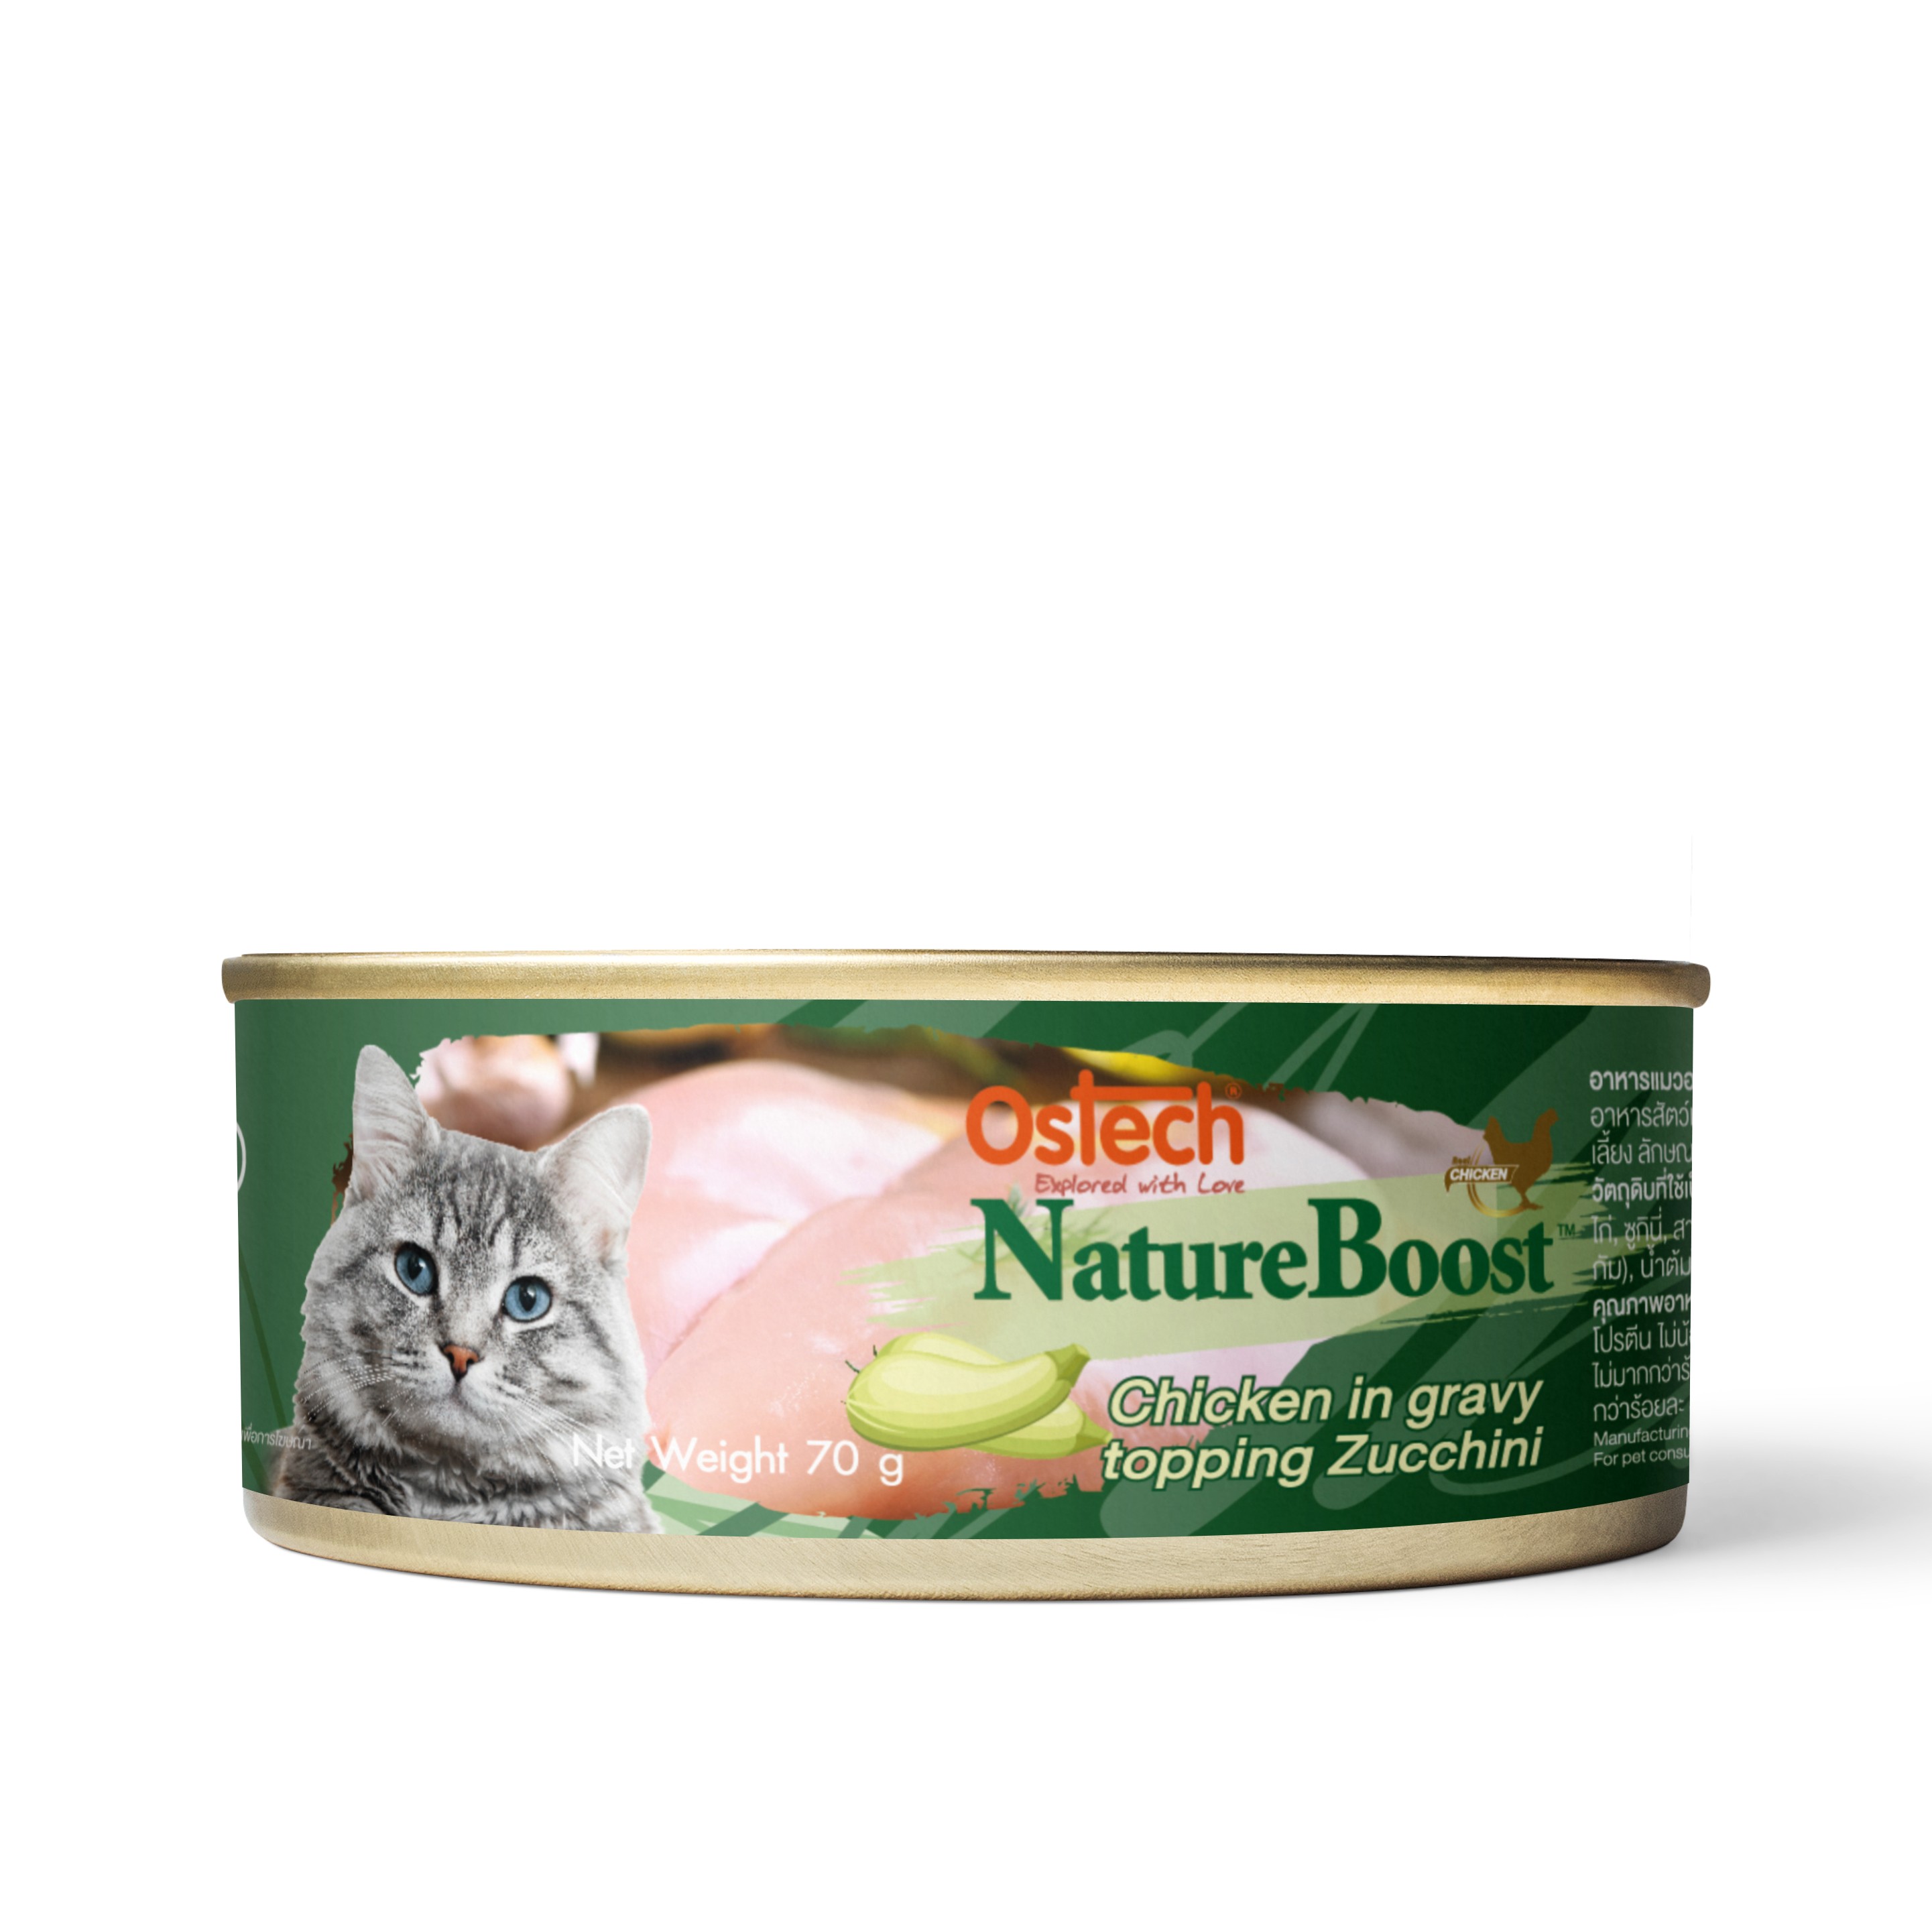 อาหารกระป๋องแมวออสเทค เนเชอบูสท์ สูตรไก่ในน้ำเกรวี่ หน้าซูกินี่